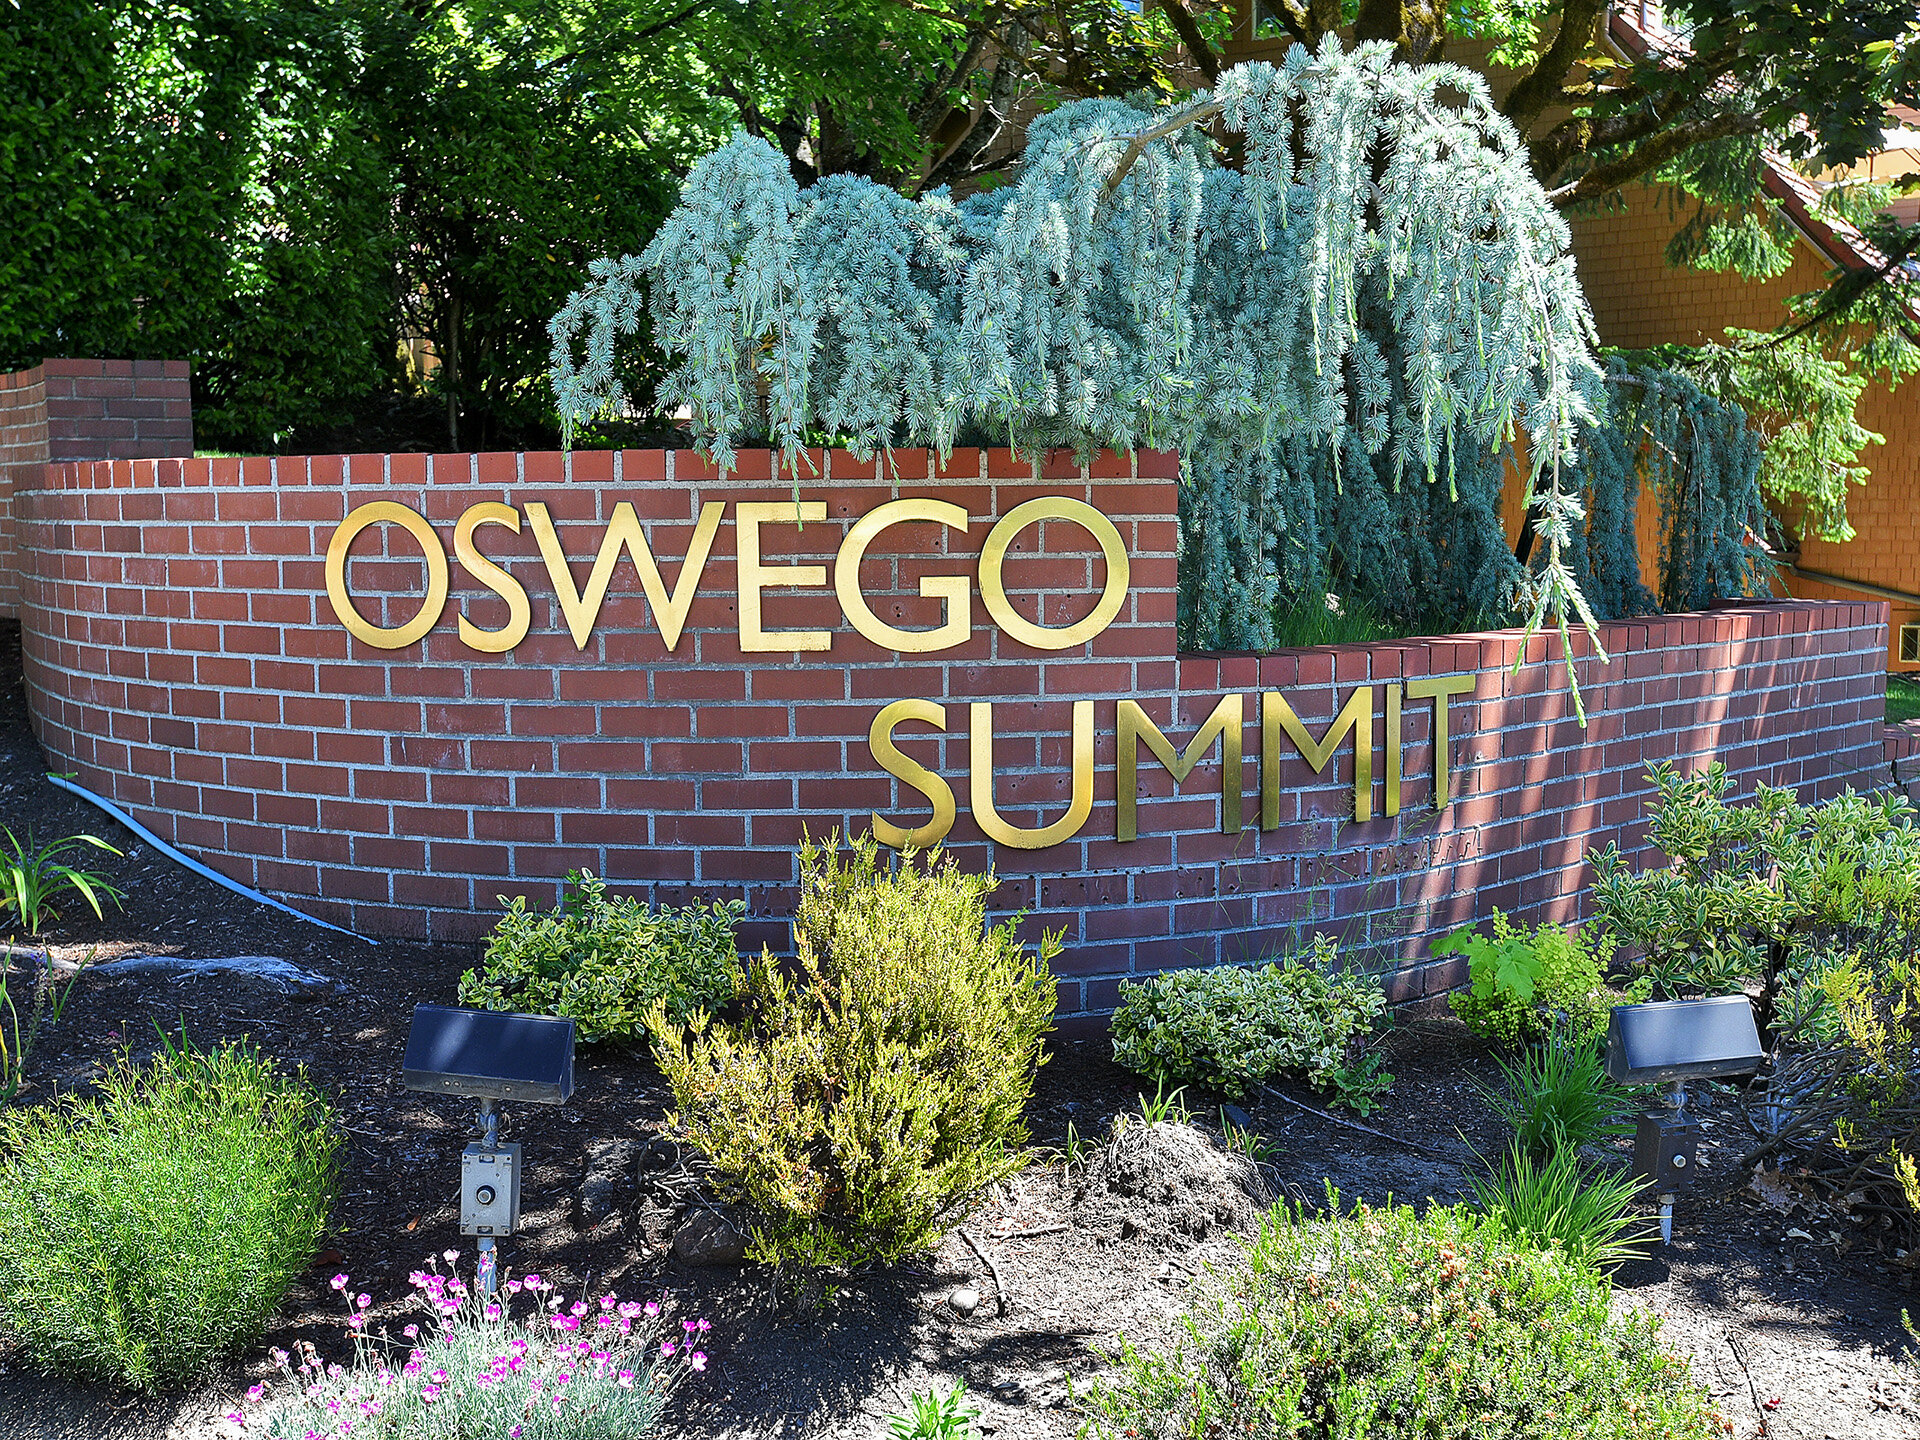 153 Oswego Summit - Lake Oswego-140.jpg